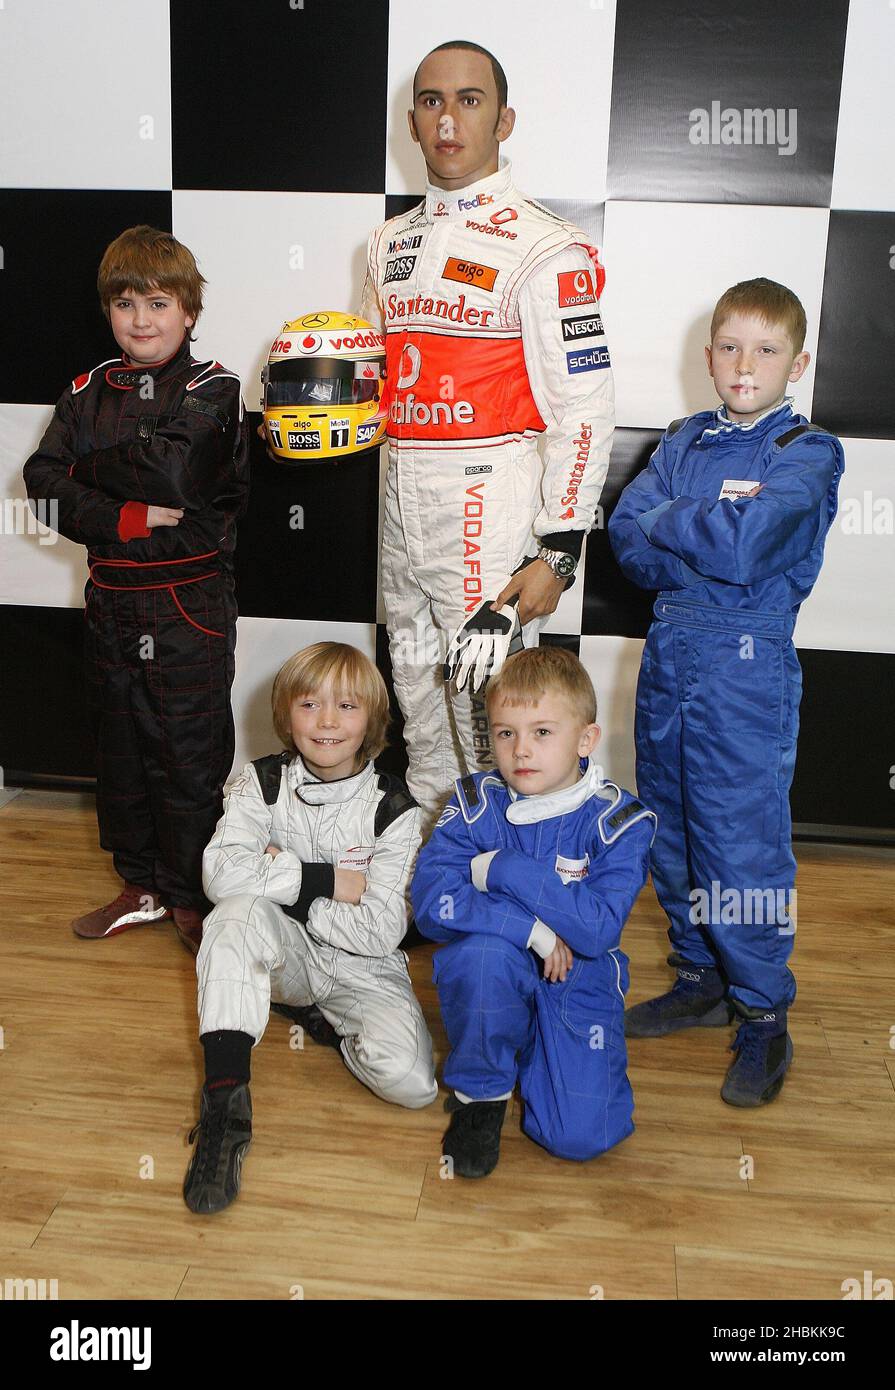 Formel-1-Rennfahrer Lewis Hamilton stellt sein Wachsfigurenkabinett mit 8-9-jährigen Stars aus dem Buckmore Park Karting Club, Chatham Kent, vor, wo Lewis im Madame Tussauds in London entdeckt wurde. Stockfoto